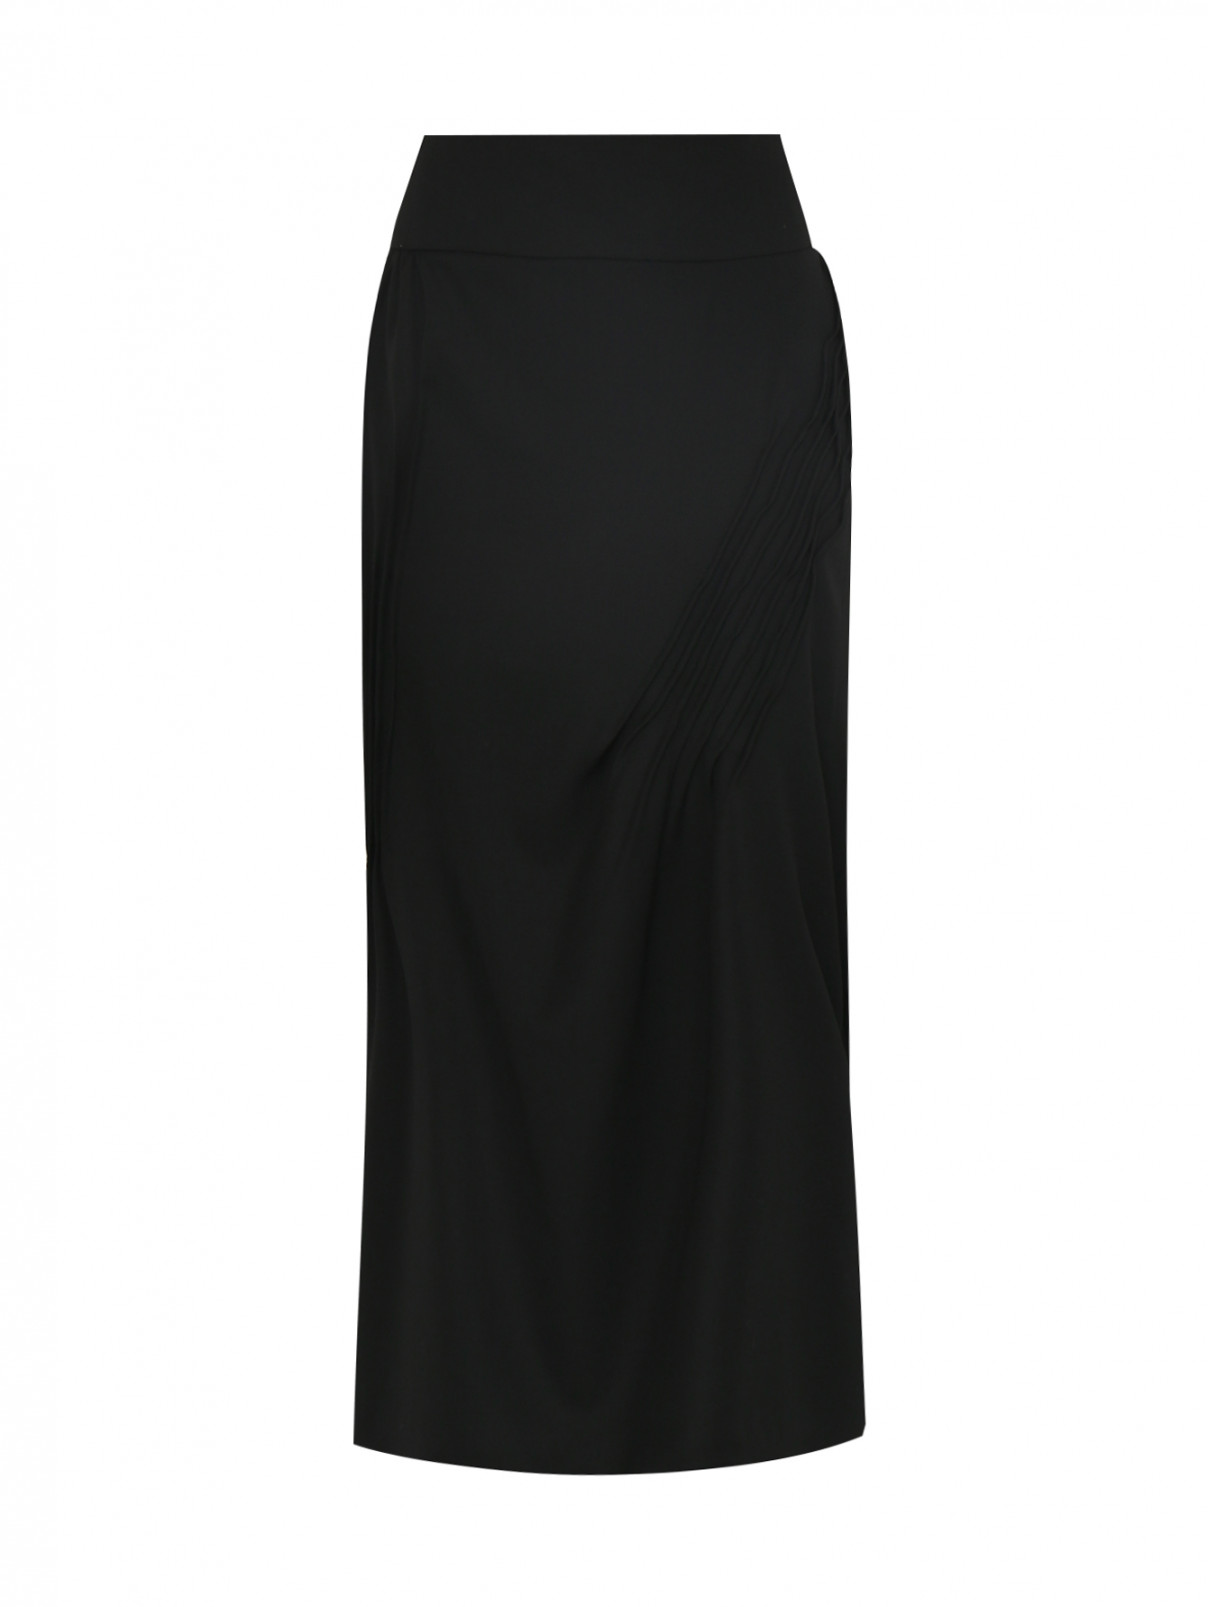 Юбка шерстяная с декоративными складками Nina Ricci  –  Общий вид  – Цвет:  Черный